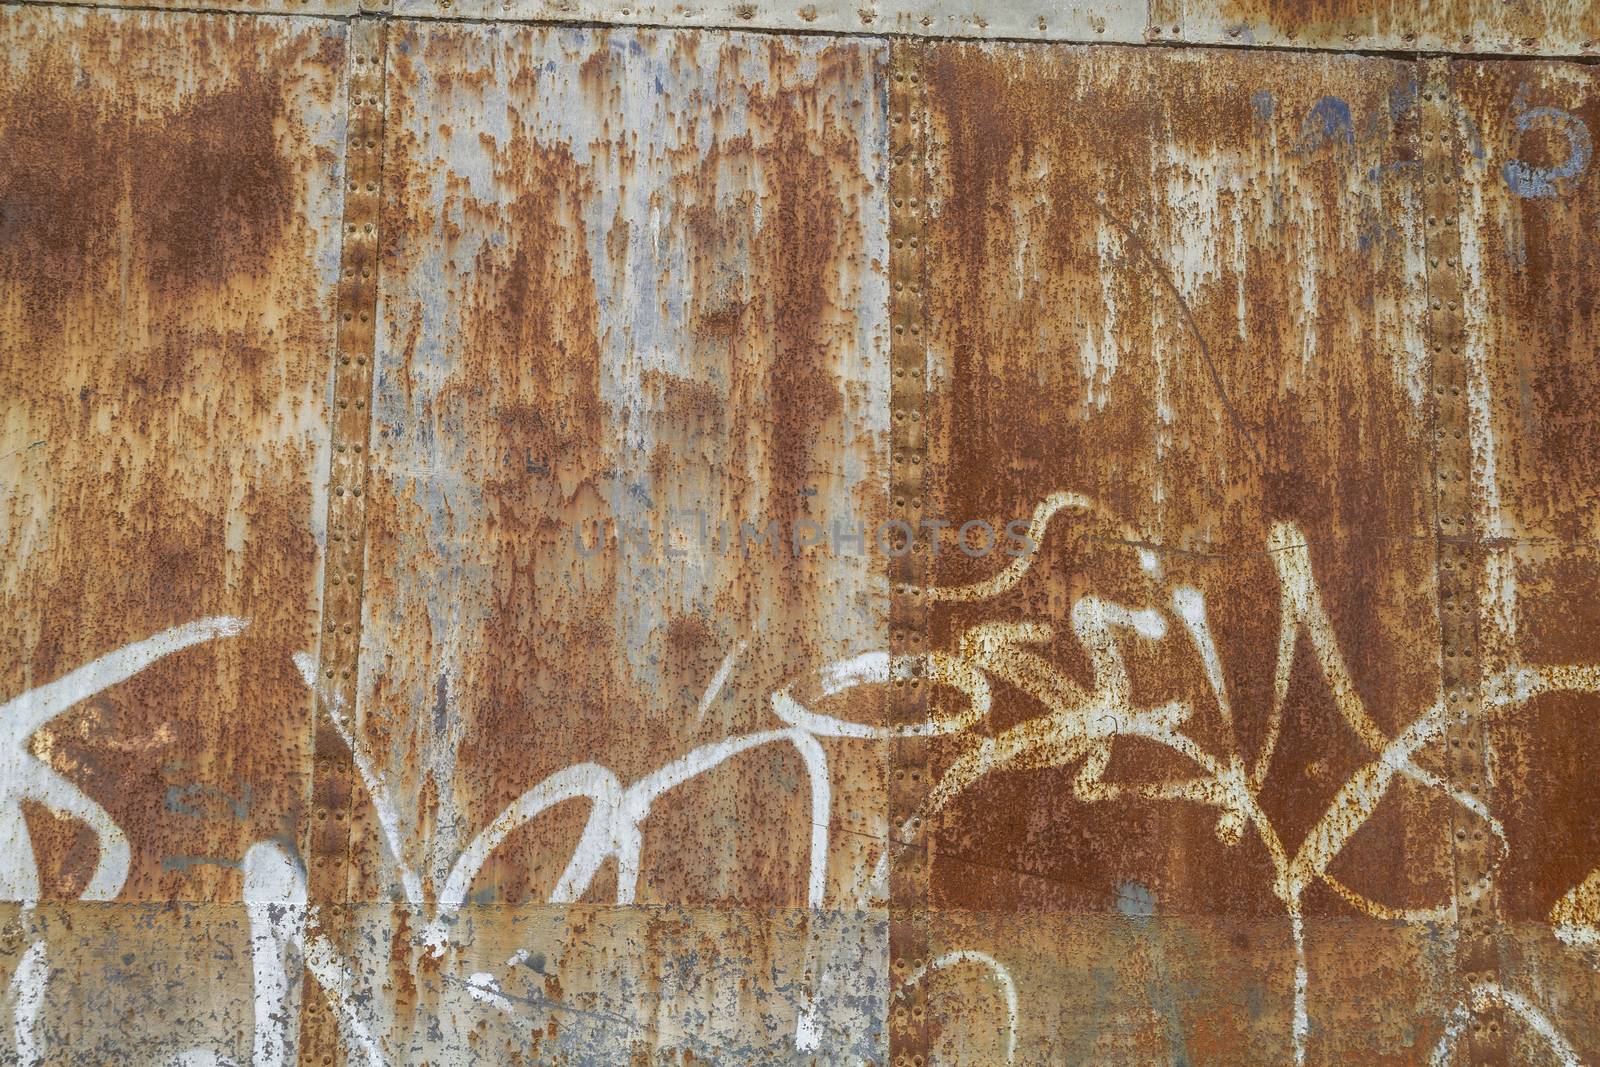 old abandoned train station, rusty iron walls, graffiti